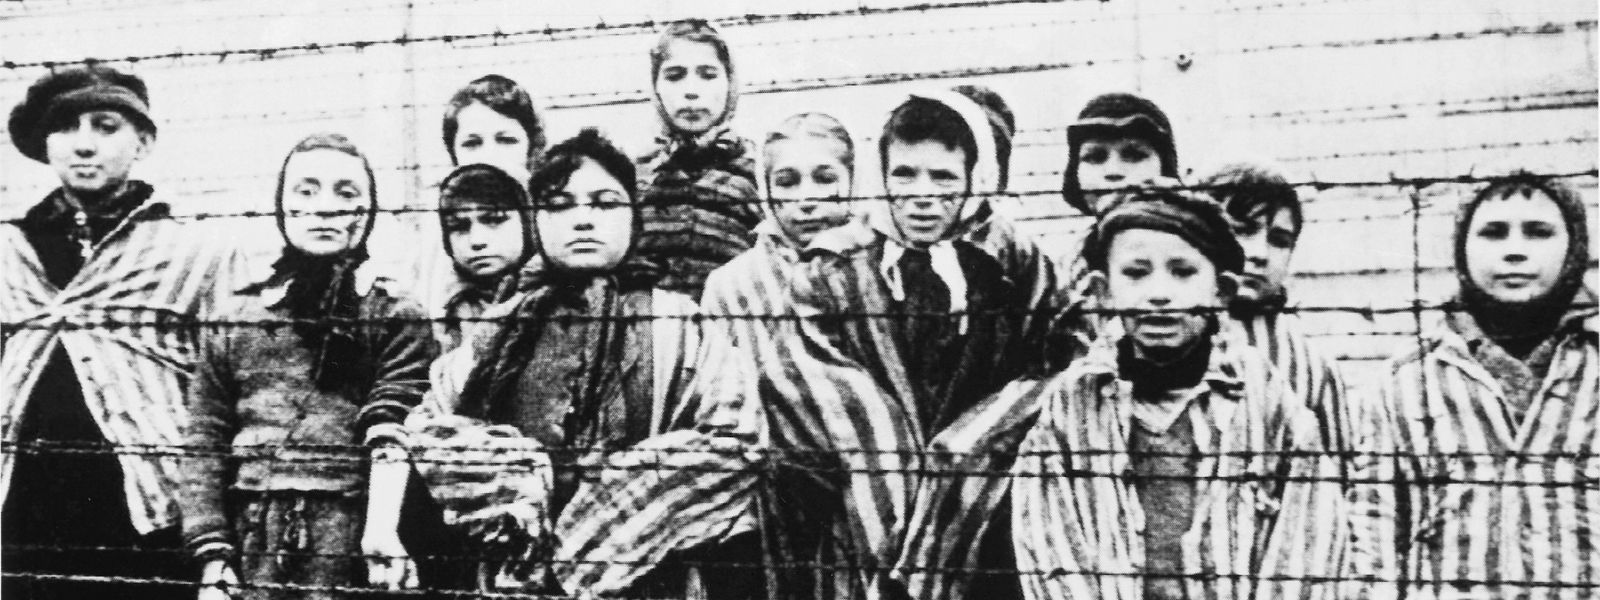 Die SS wollte auch diese Kinder eigentlich noch töten. Doch dann dröhnen russische Flugzeuge über dem Konzentrationslager Auschwitz und in der Nähe brechen Gefechte aus. Statt ihren Befehl zu vollstrecken, fliehen die verbliebenen Nazis.